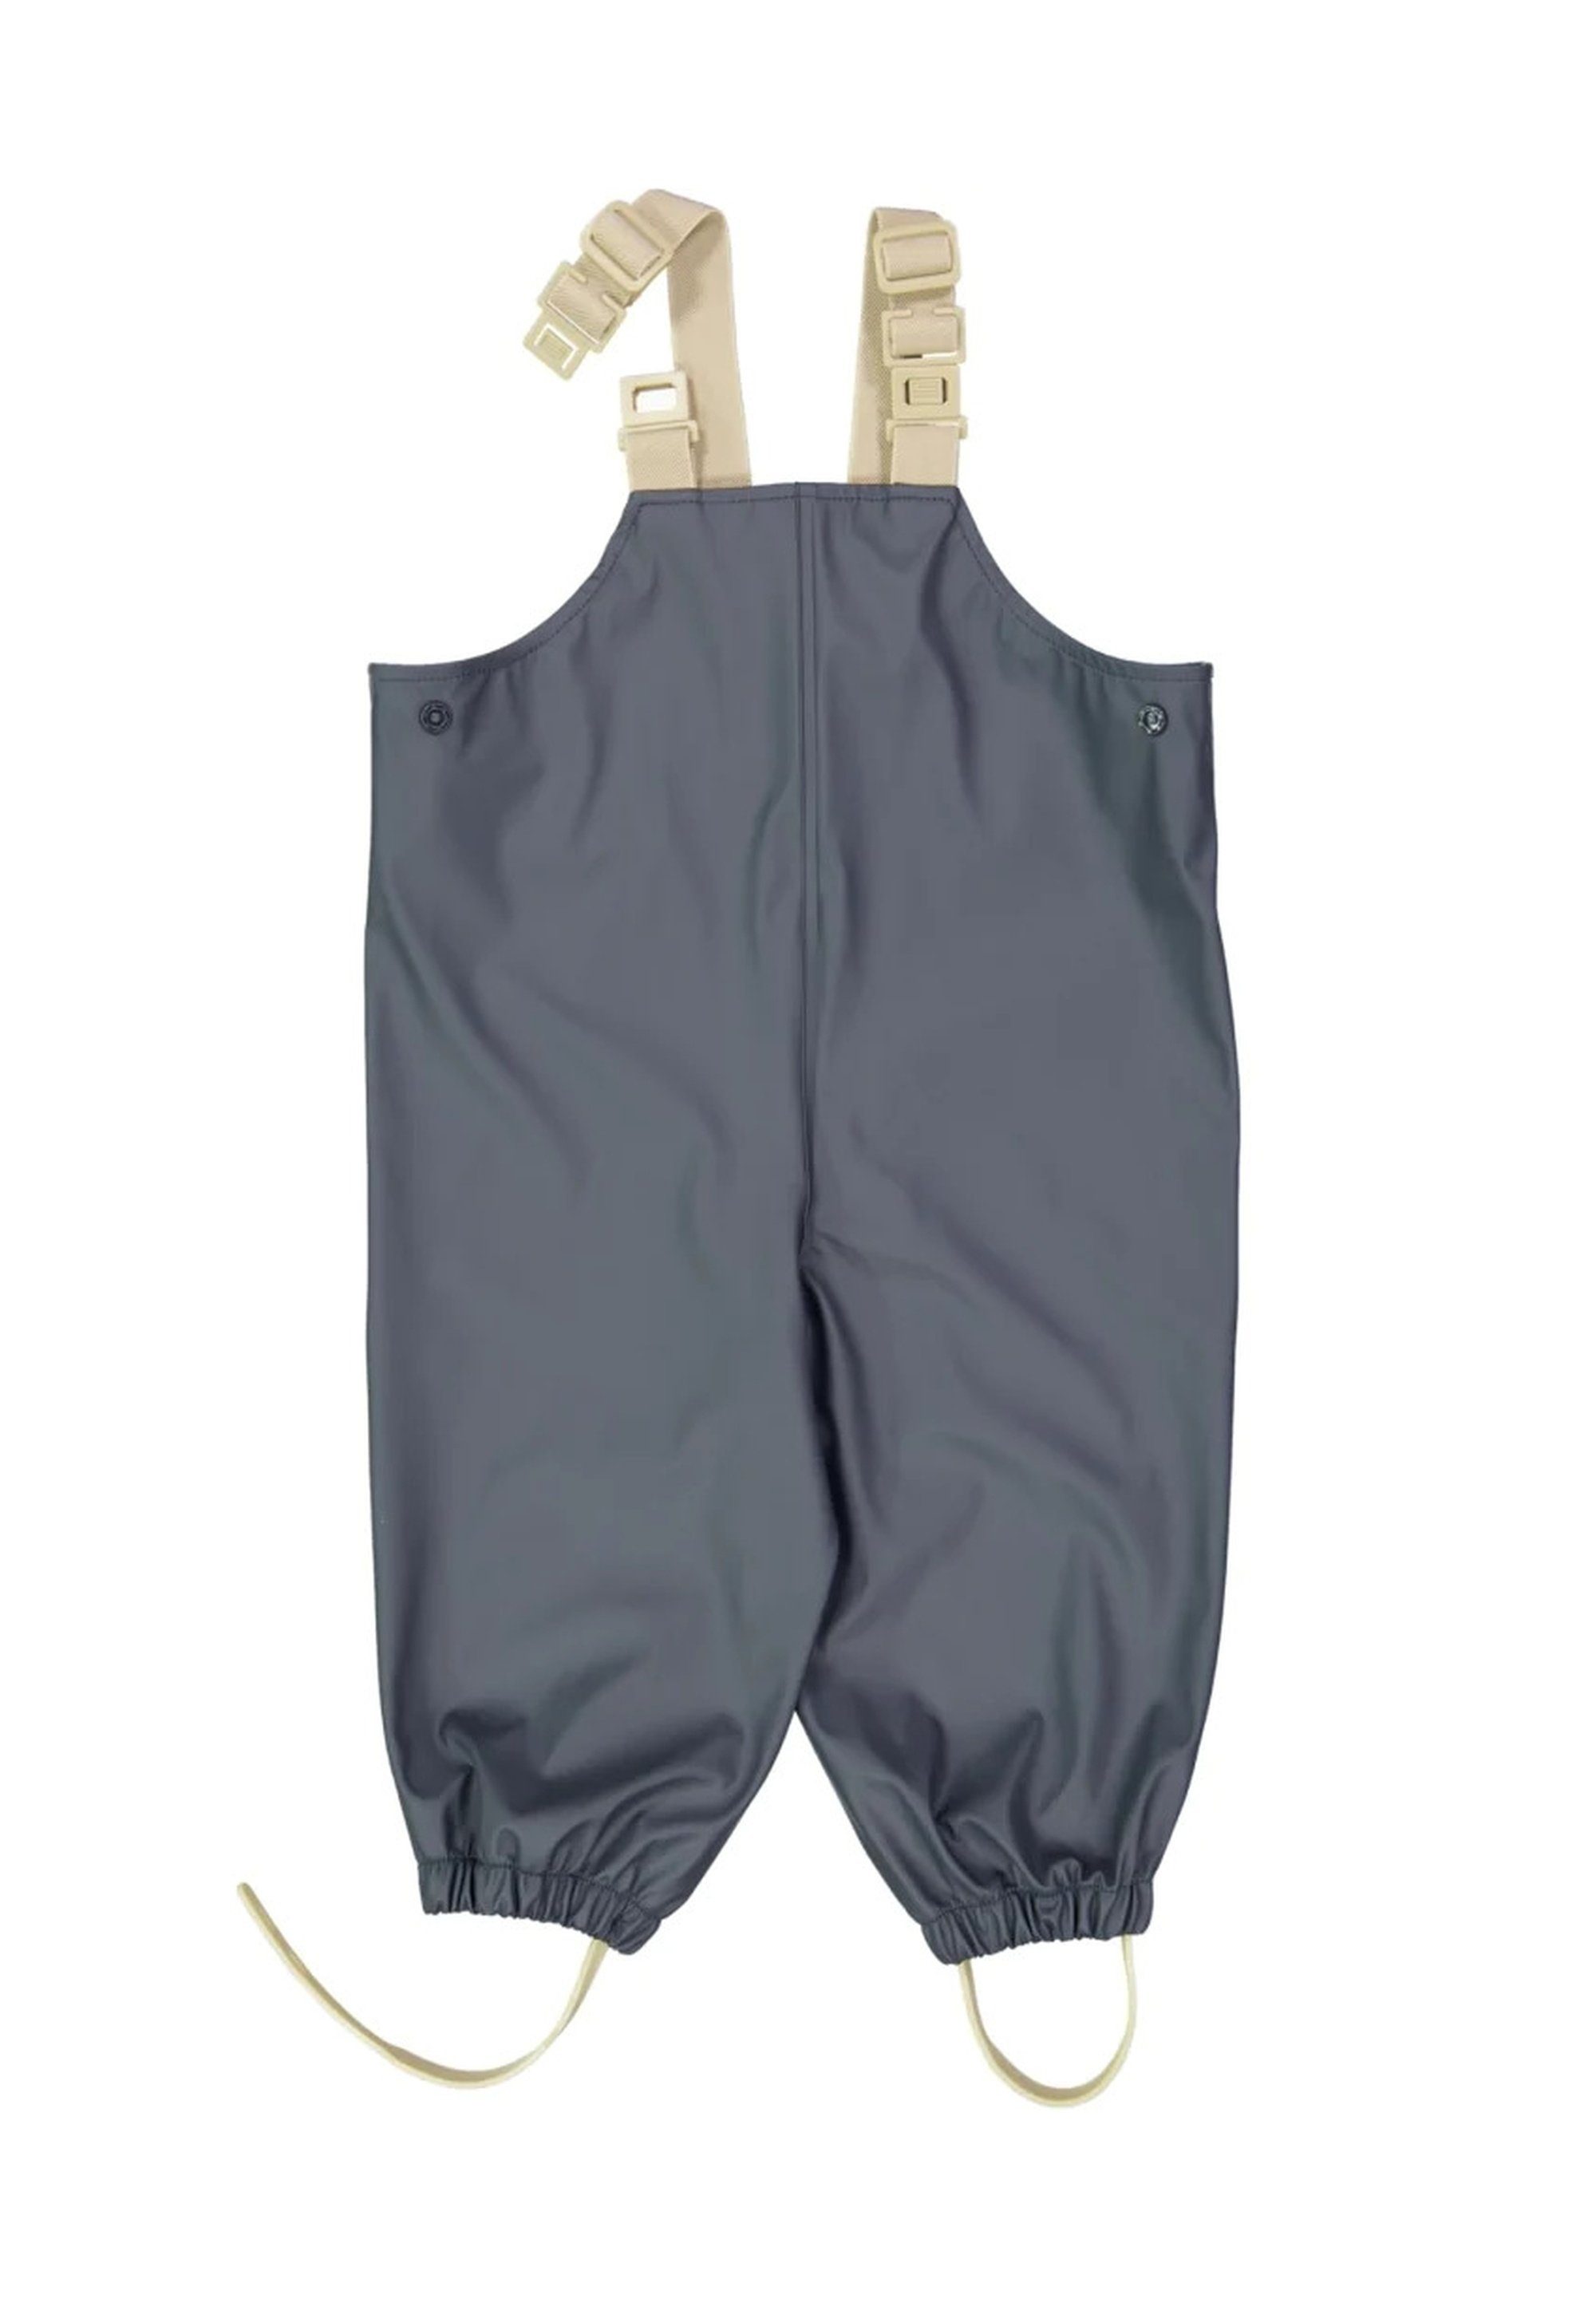 WHEAT Regenoverall WHEAT Regenkleidungsset Charlie Dänisches Design /  nachhaltig, Verstellbare elastische Hosenträger